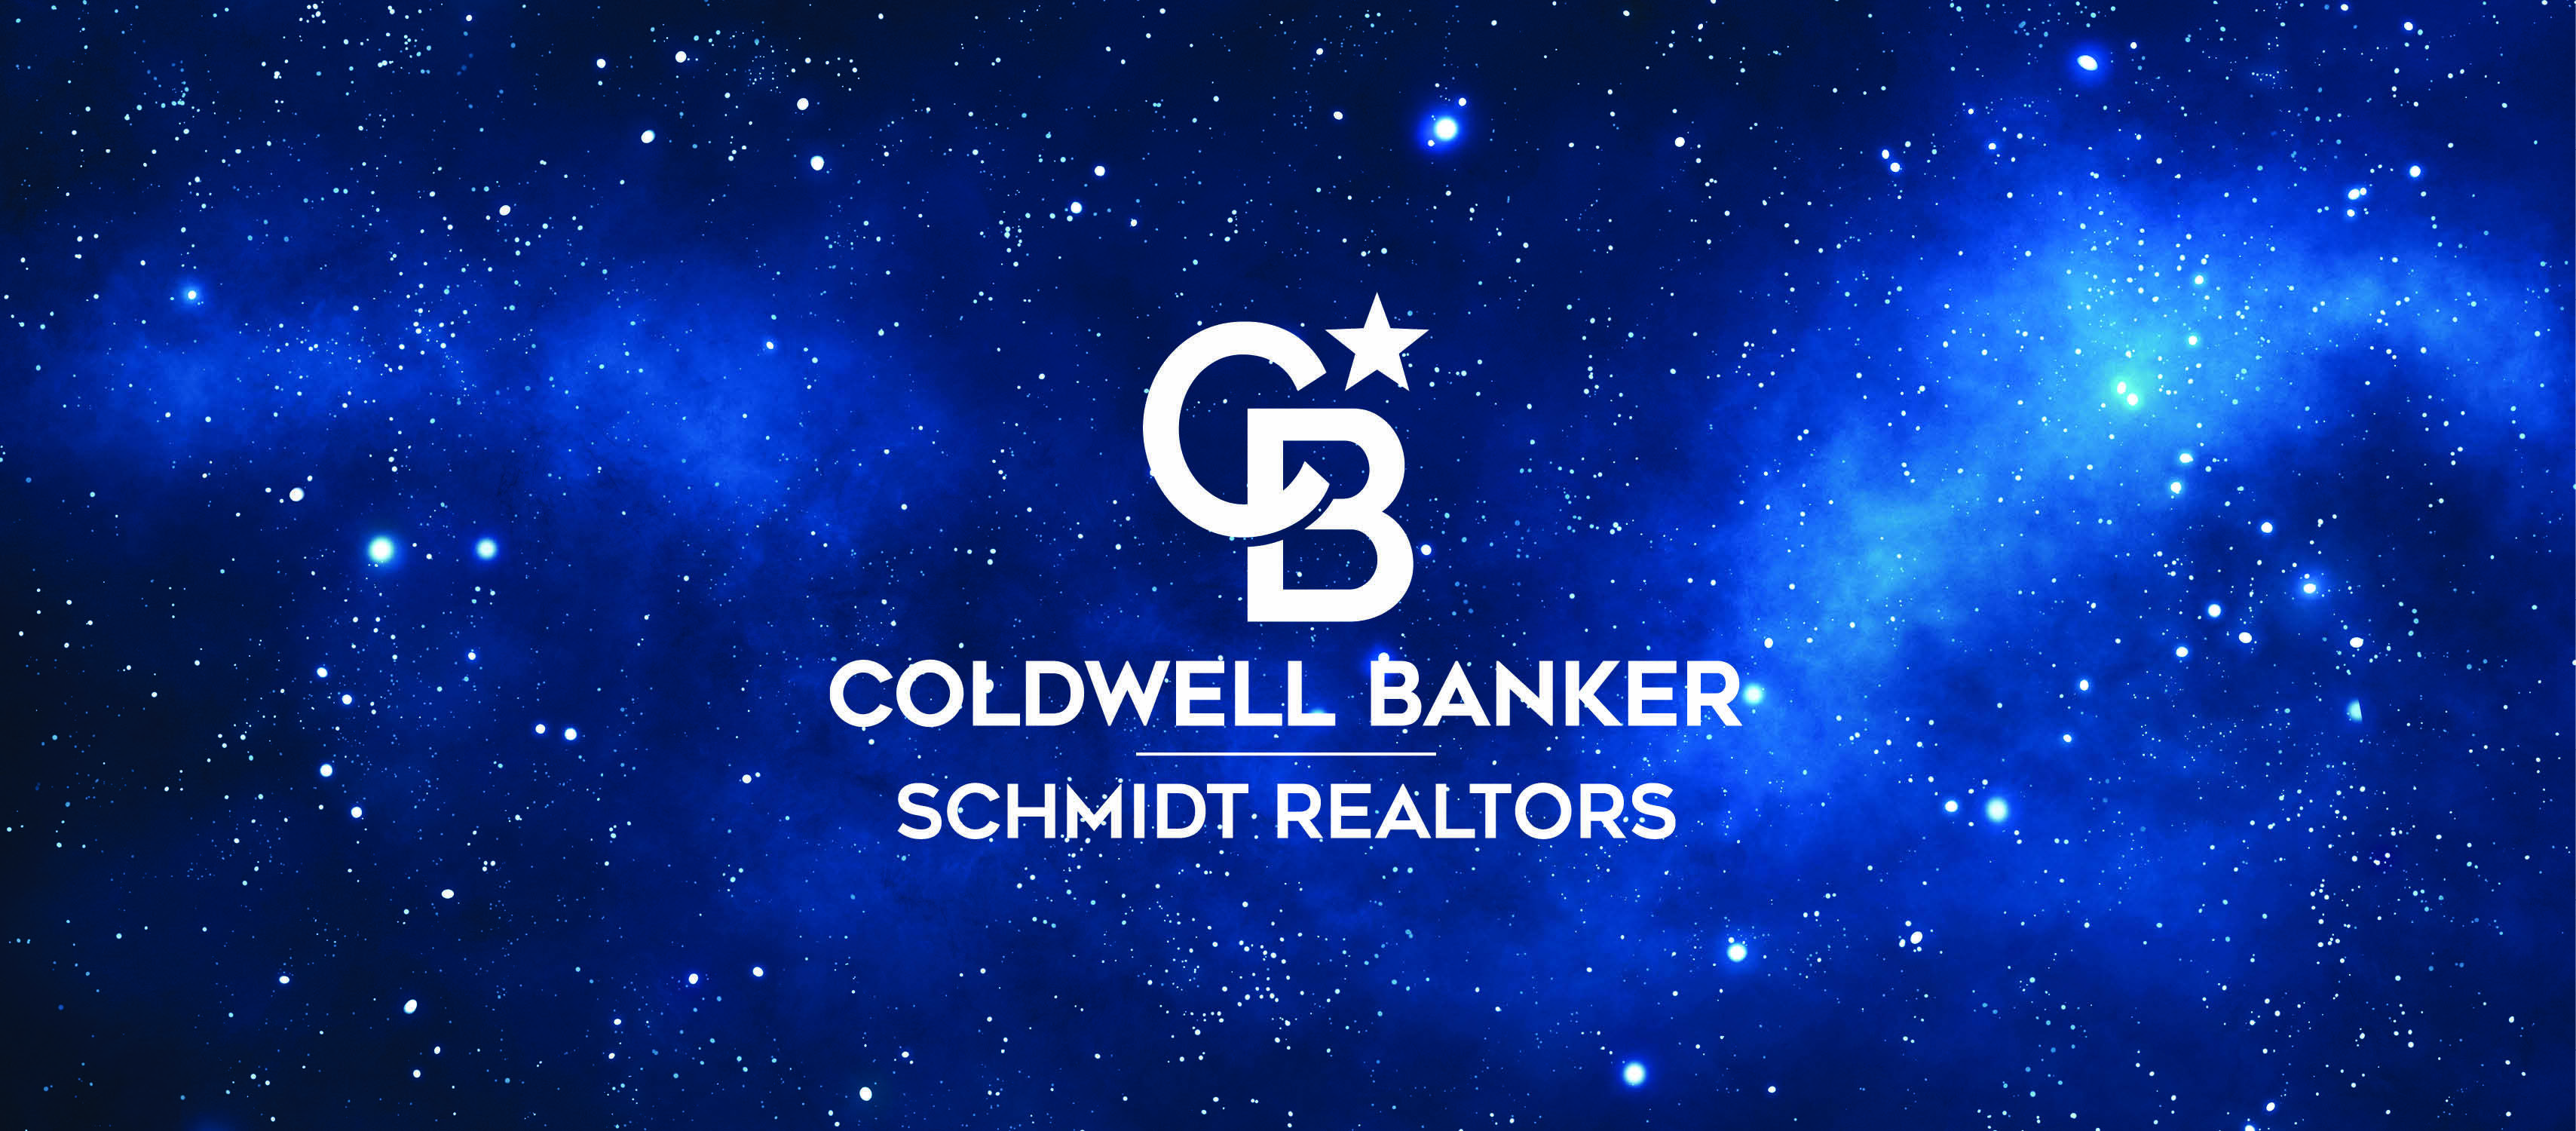 Coldwell Banker Schmidt Realtors - Benzie,Benzonia,Schmidt Real Estate